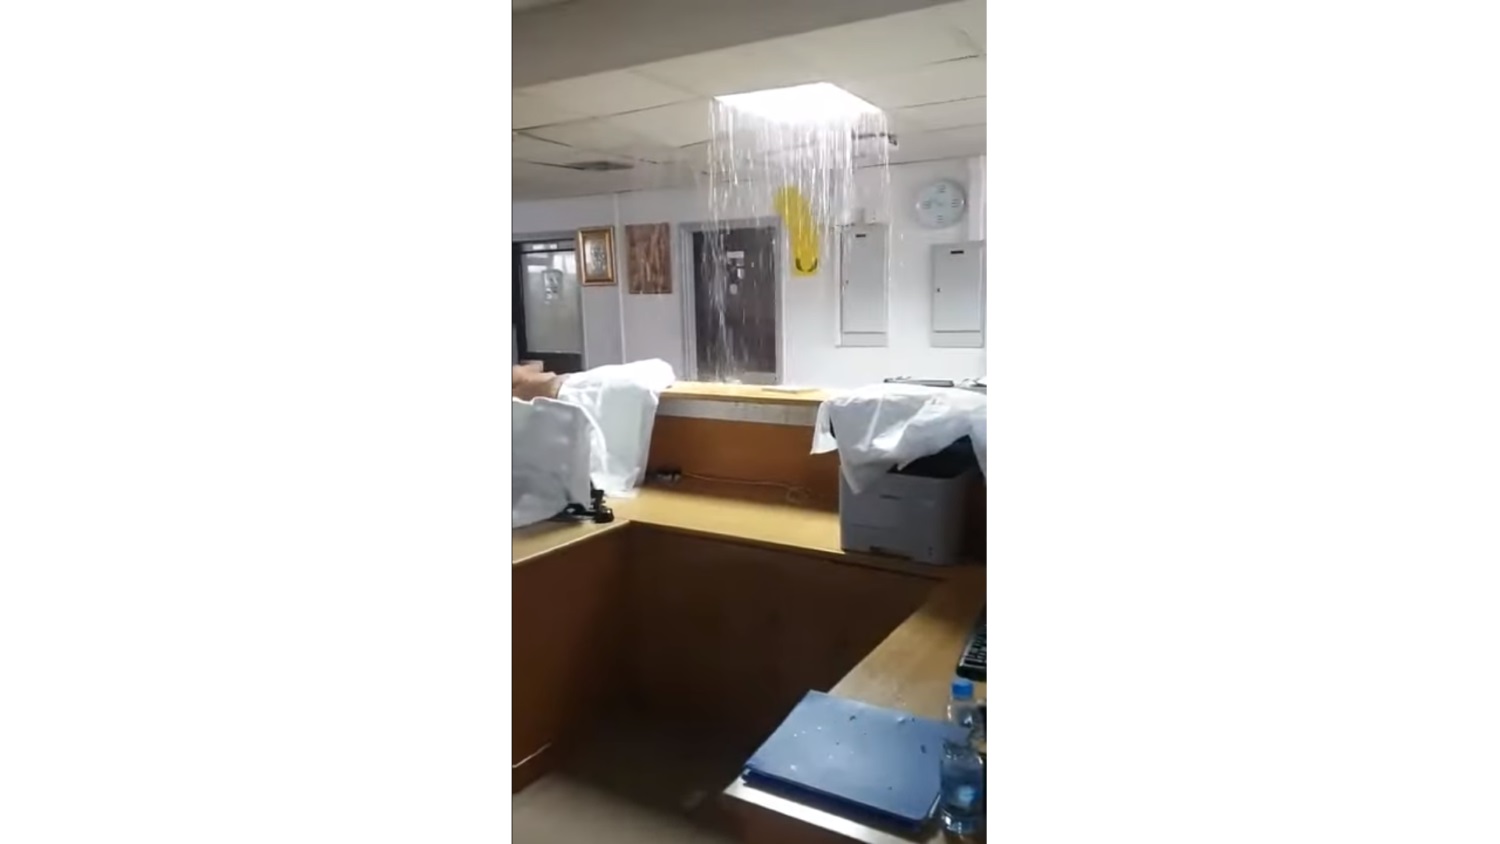 Κύπρος: Γέμισε νερά η ΜΕΘ του Γενικού Νοσοκομείου Λάρνακας